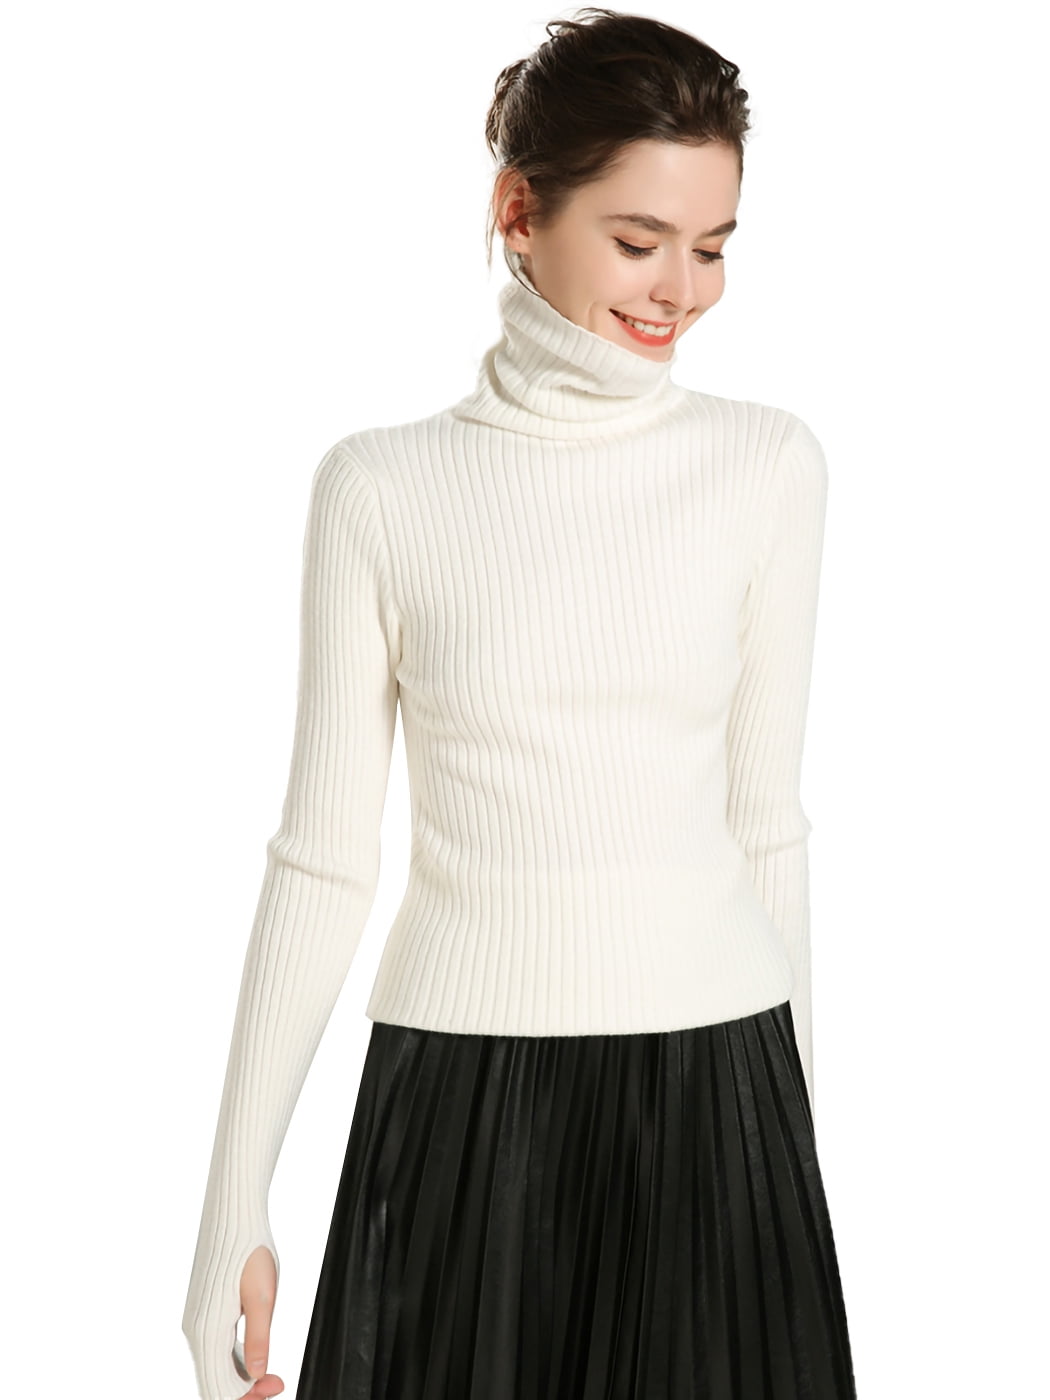 Women S Long Sleeve Turtleneck Basic Stretchy Knit Slim Sweater White Large